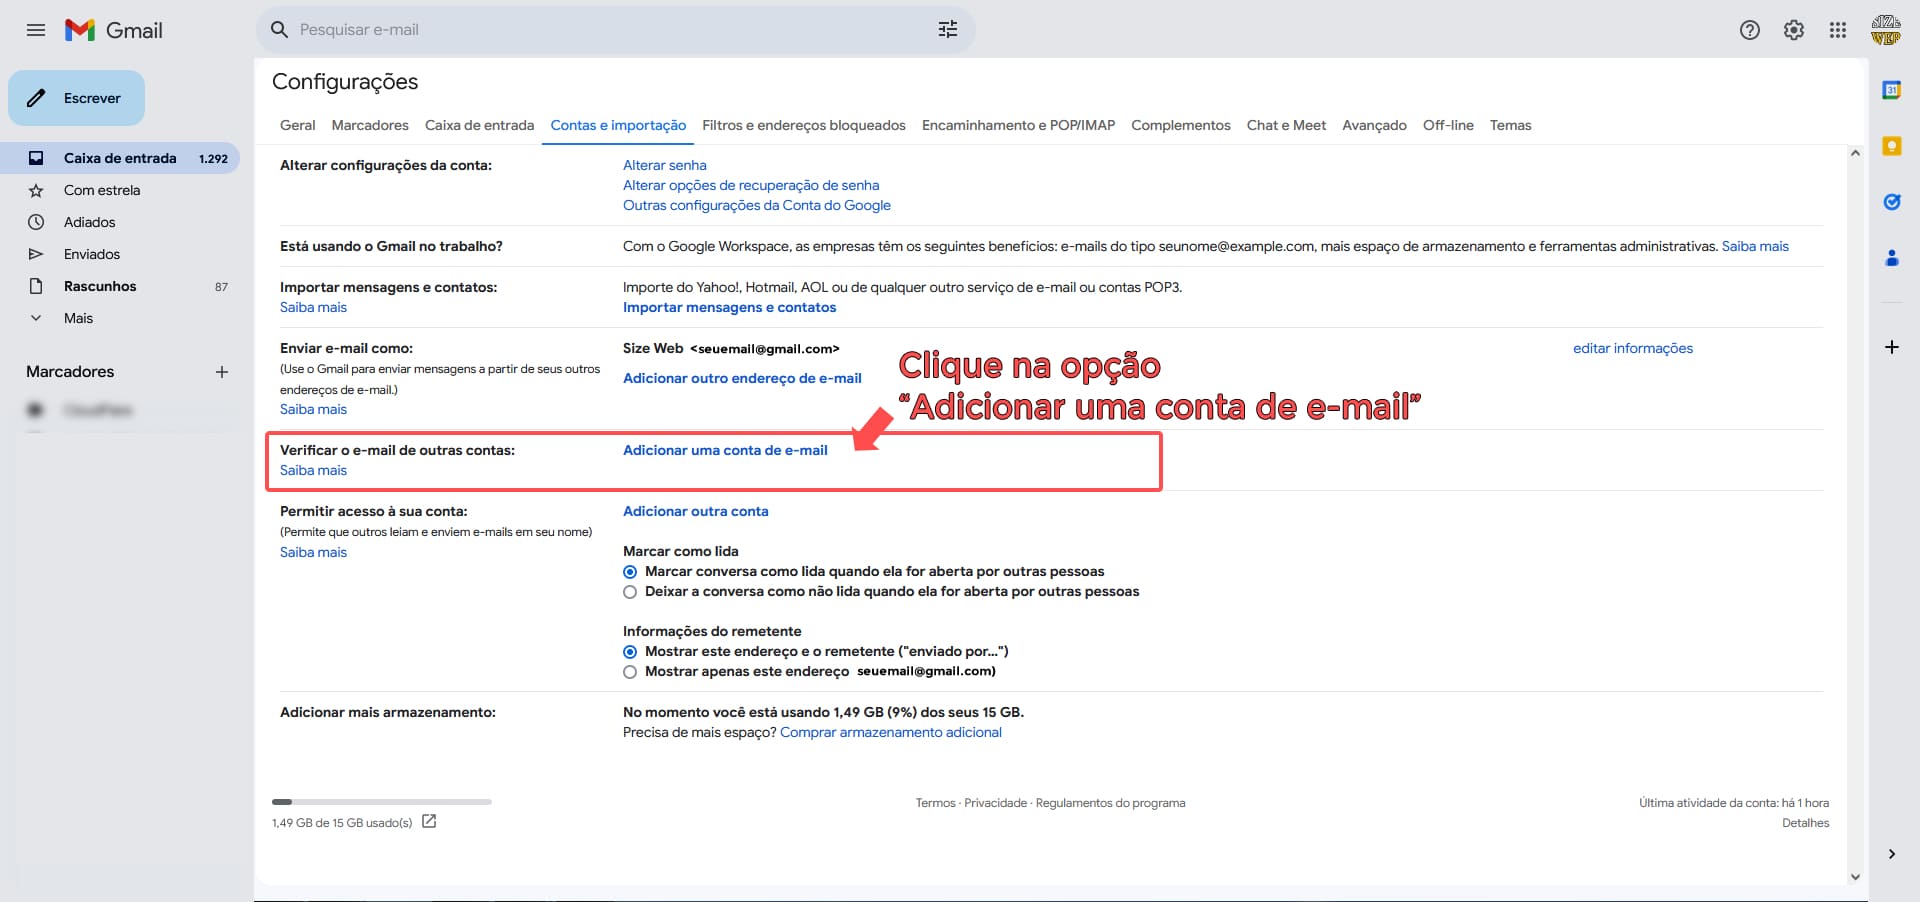 Imagem mostrando a opção para adicionar uma conta de e-mail profissional no Gmail